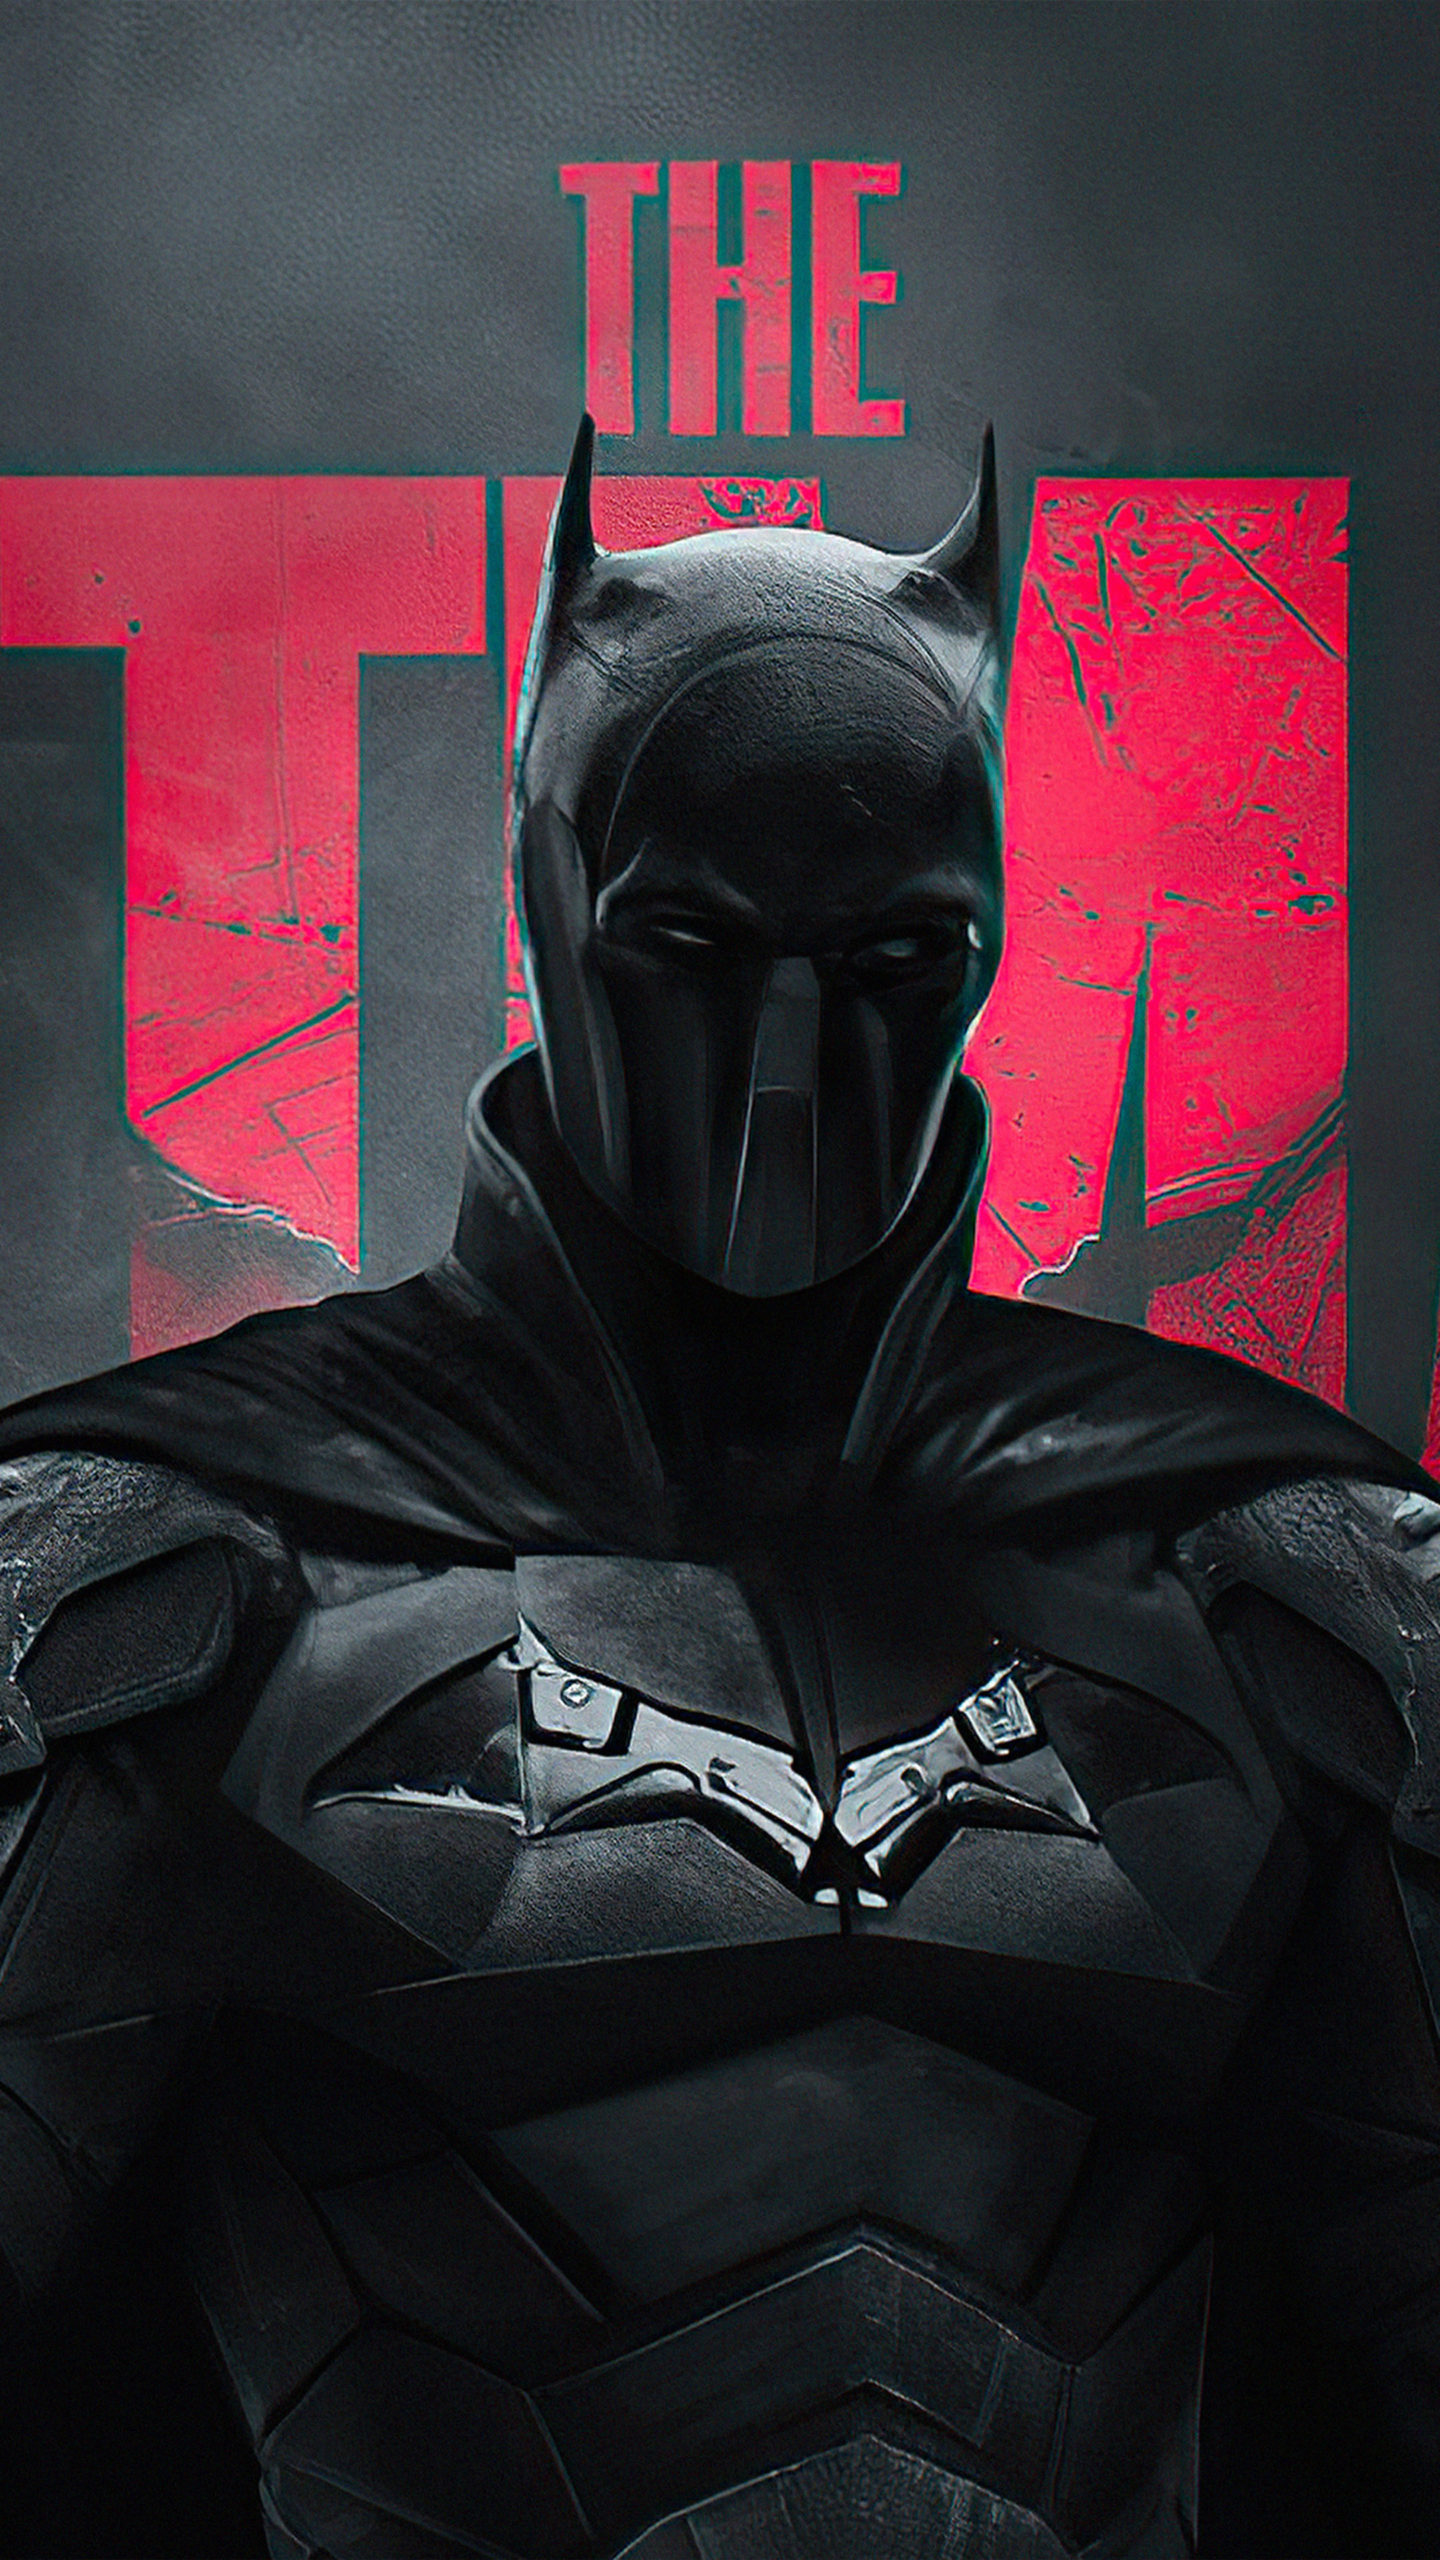 The Batman Posters 2022 - HD - Batman Wallpaper Download